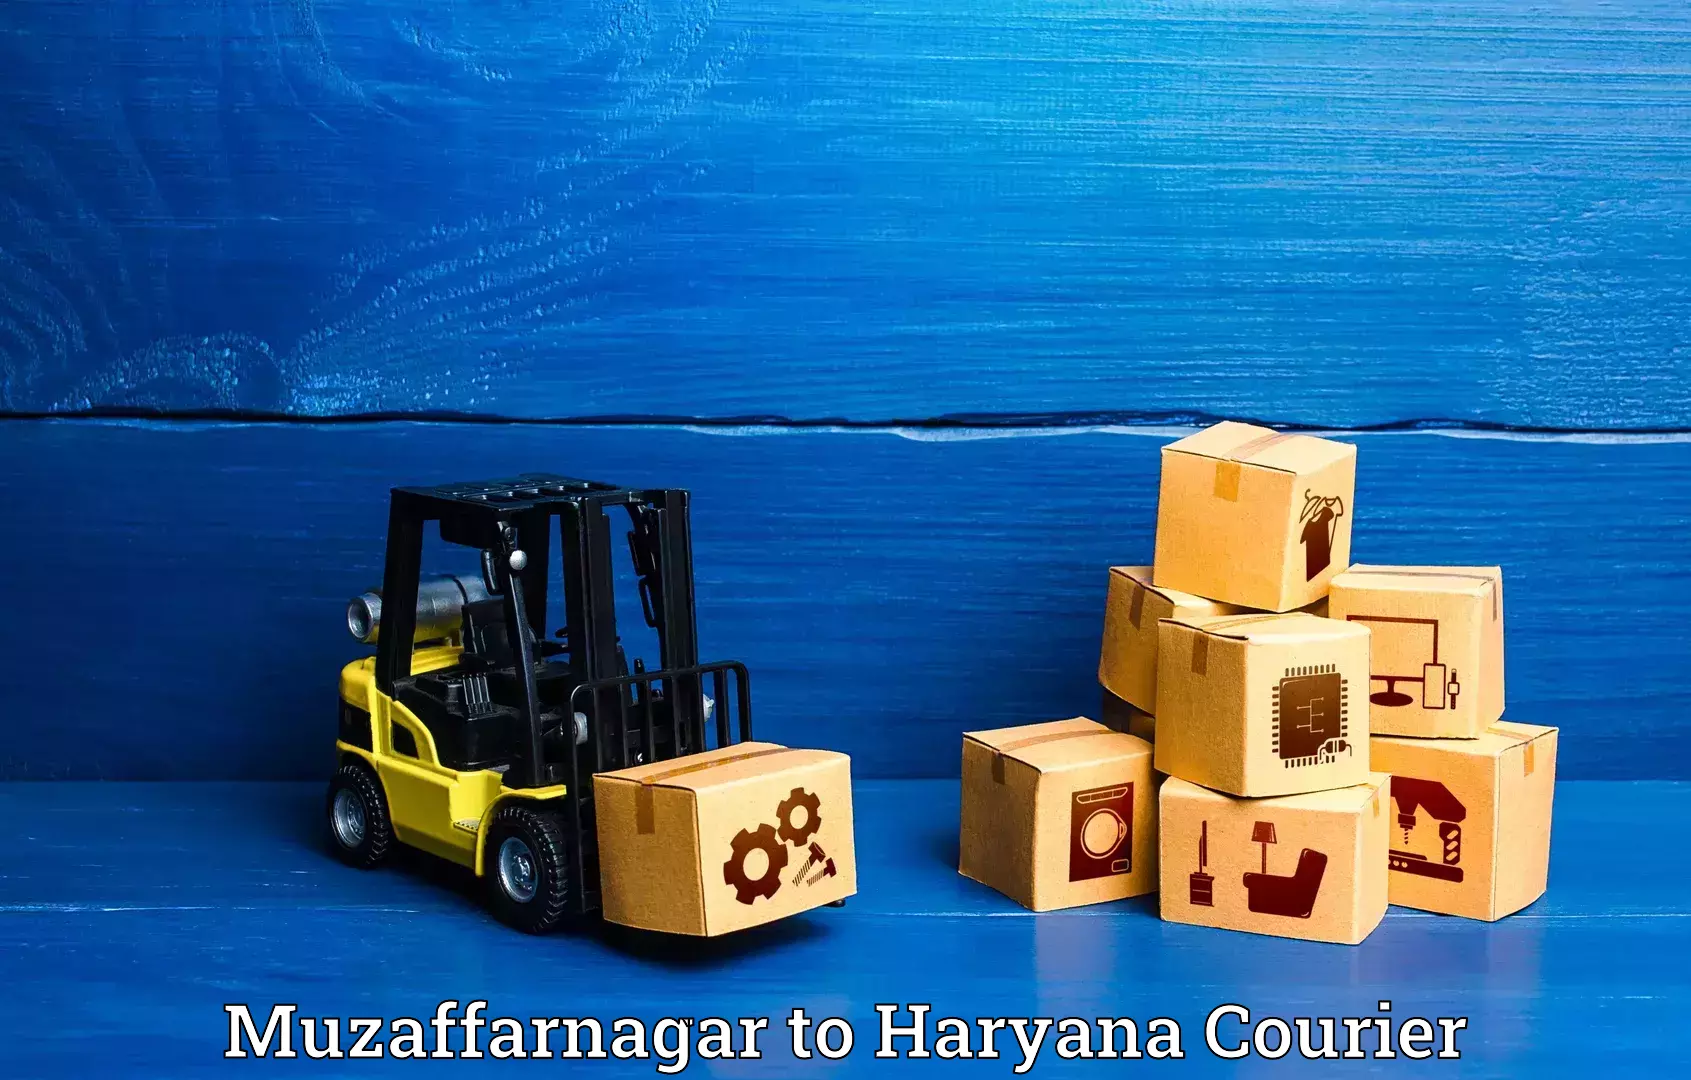 Baggage relocation service Muzaffarnagar to Haryana